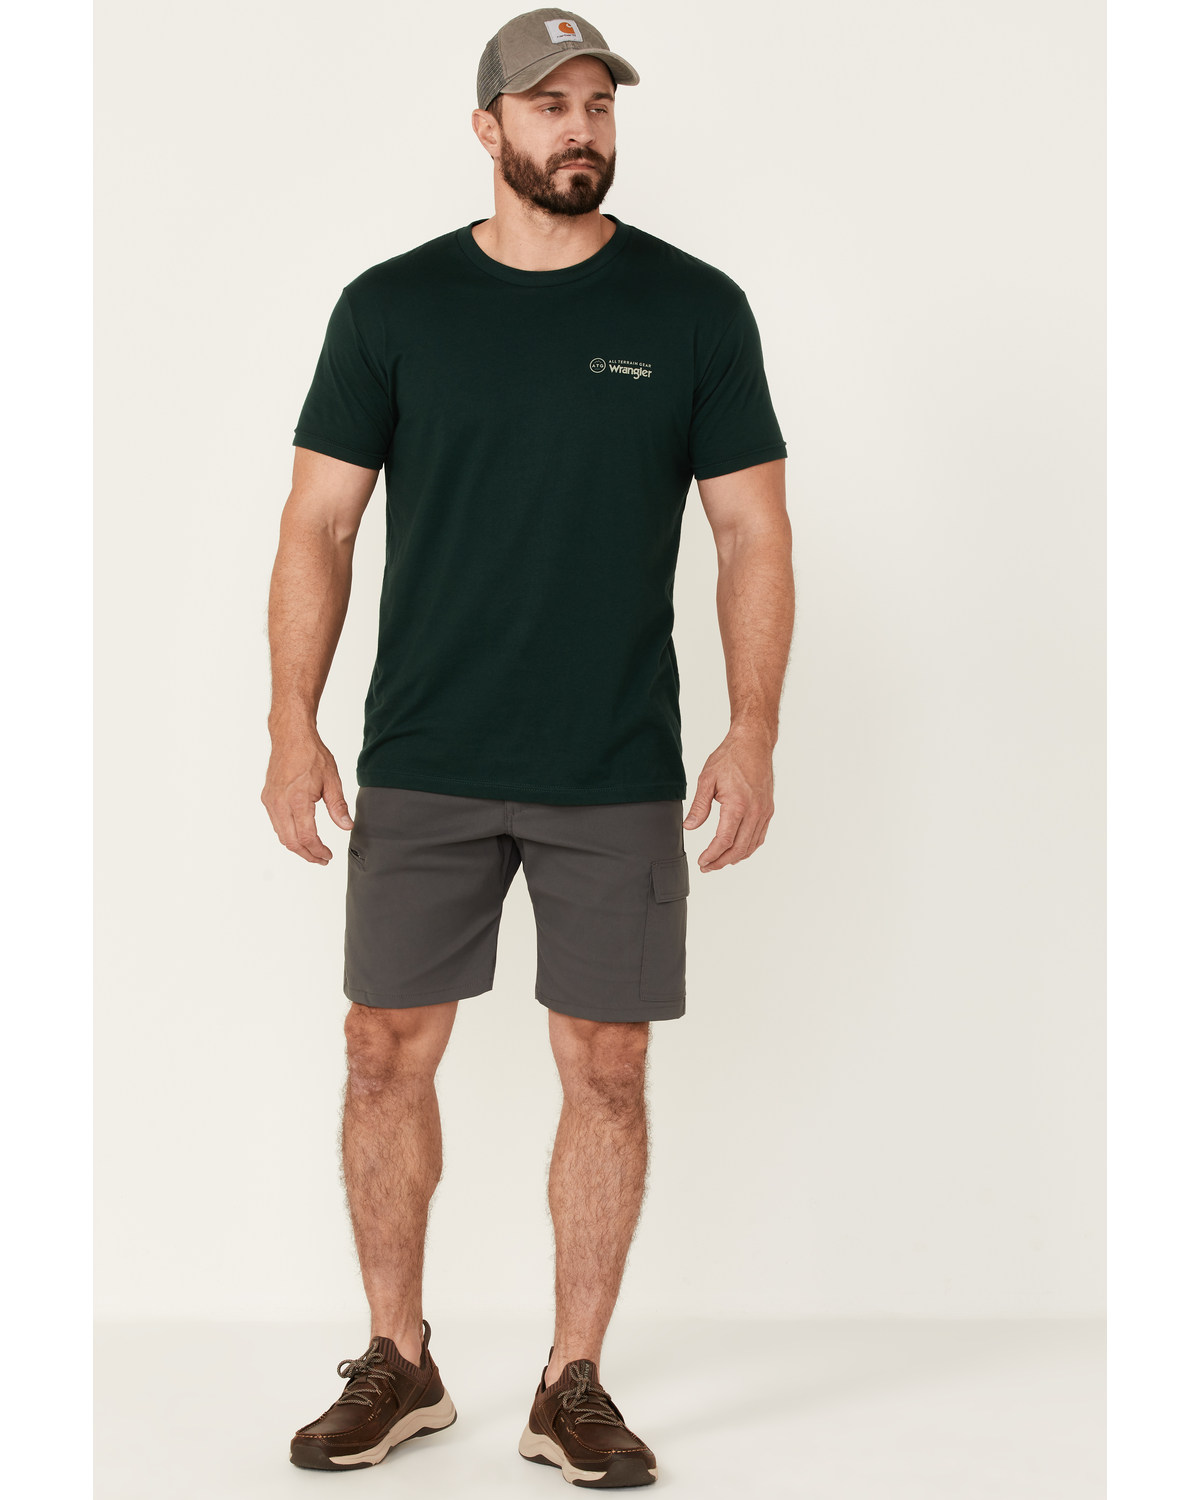 ATG by Wrangler Men's All-Terrain Asymmetric Cargo Shorts